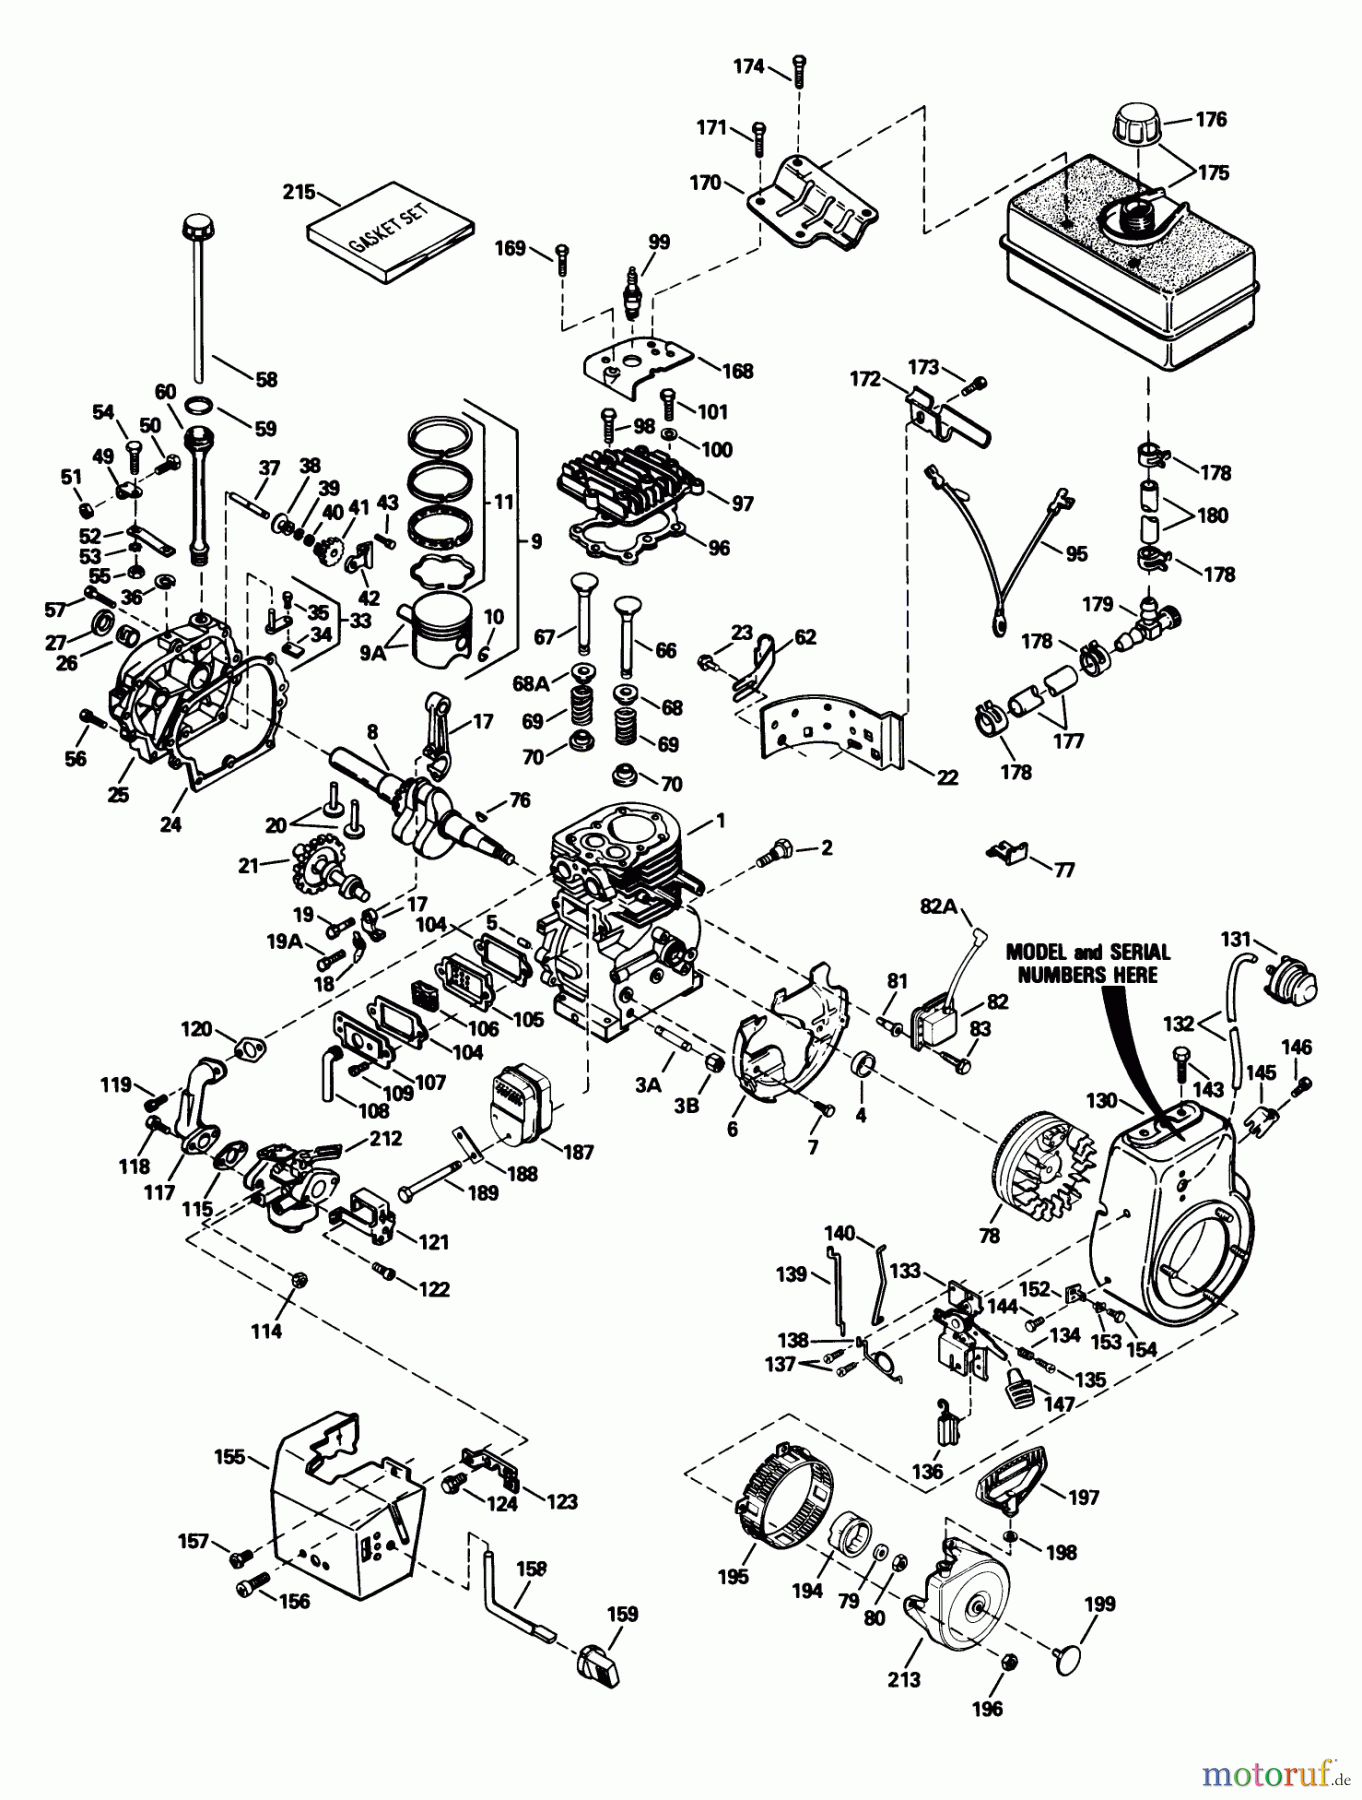  Toro Neu Snow Blowers/Snow Throwers Seite 1 38540 (824) - Toro 824 Power Shift Snowthrower, 1993 (3900001-3999999) ENGINE TECUMSEH MODEL NO. HM80-155337P